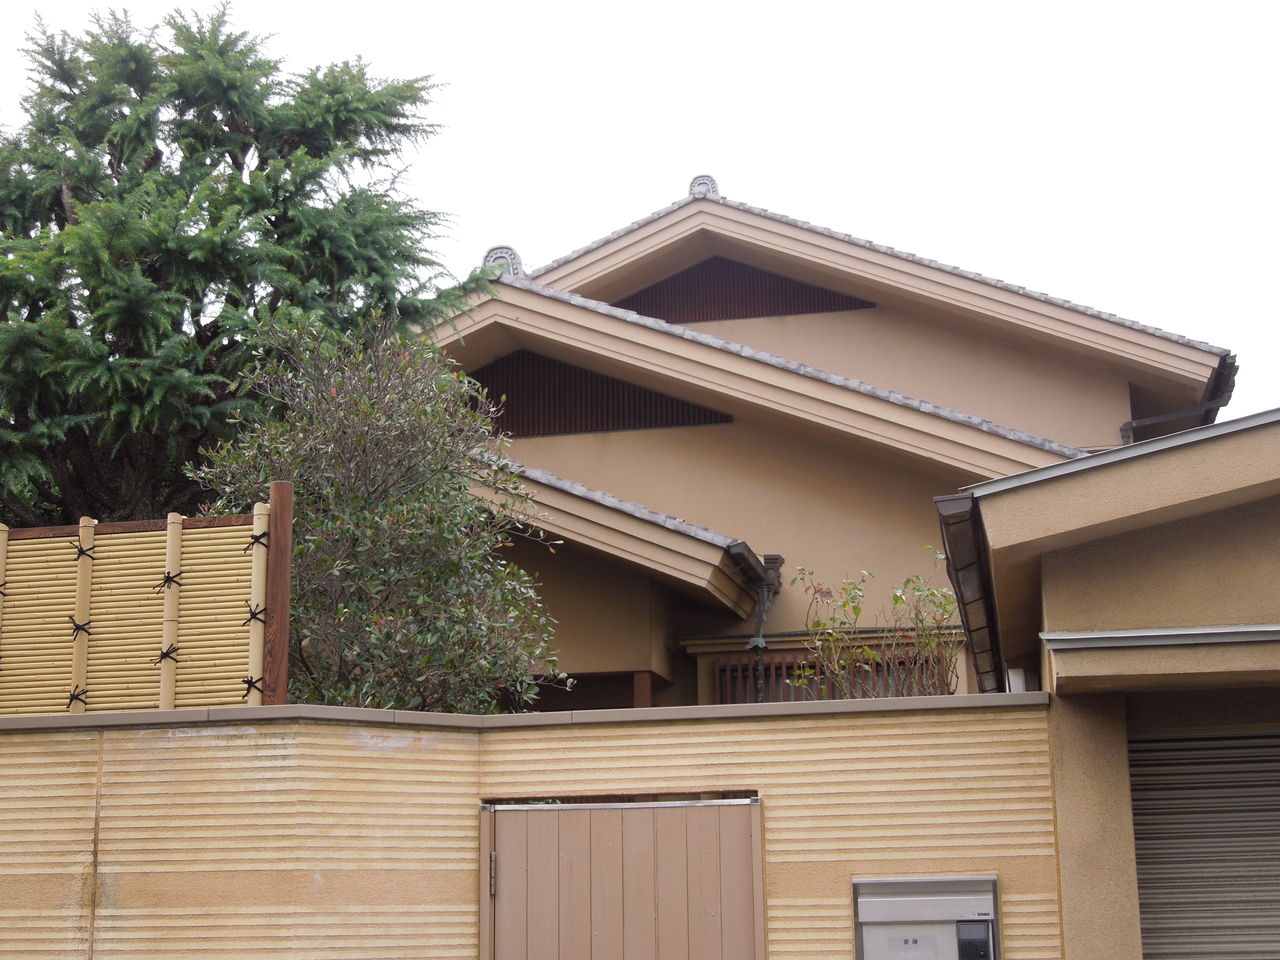 吉祥寺南町に大きな日本家屋の豪邸がありました 東京都内の豪邸探索ブログ